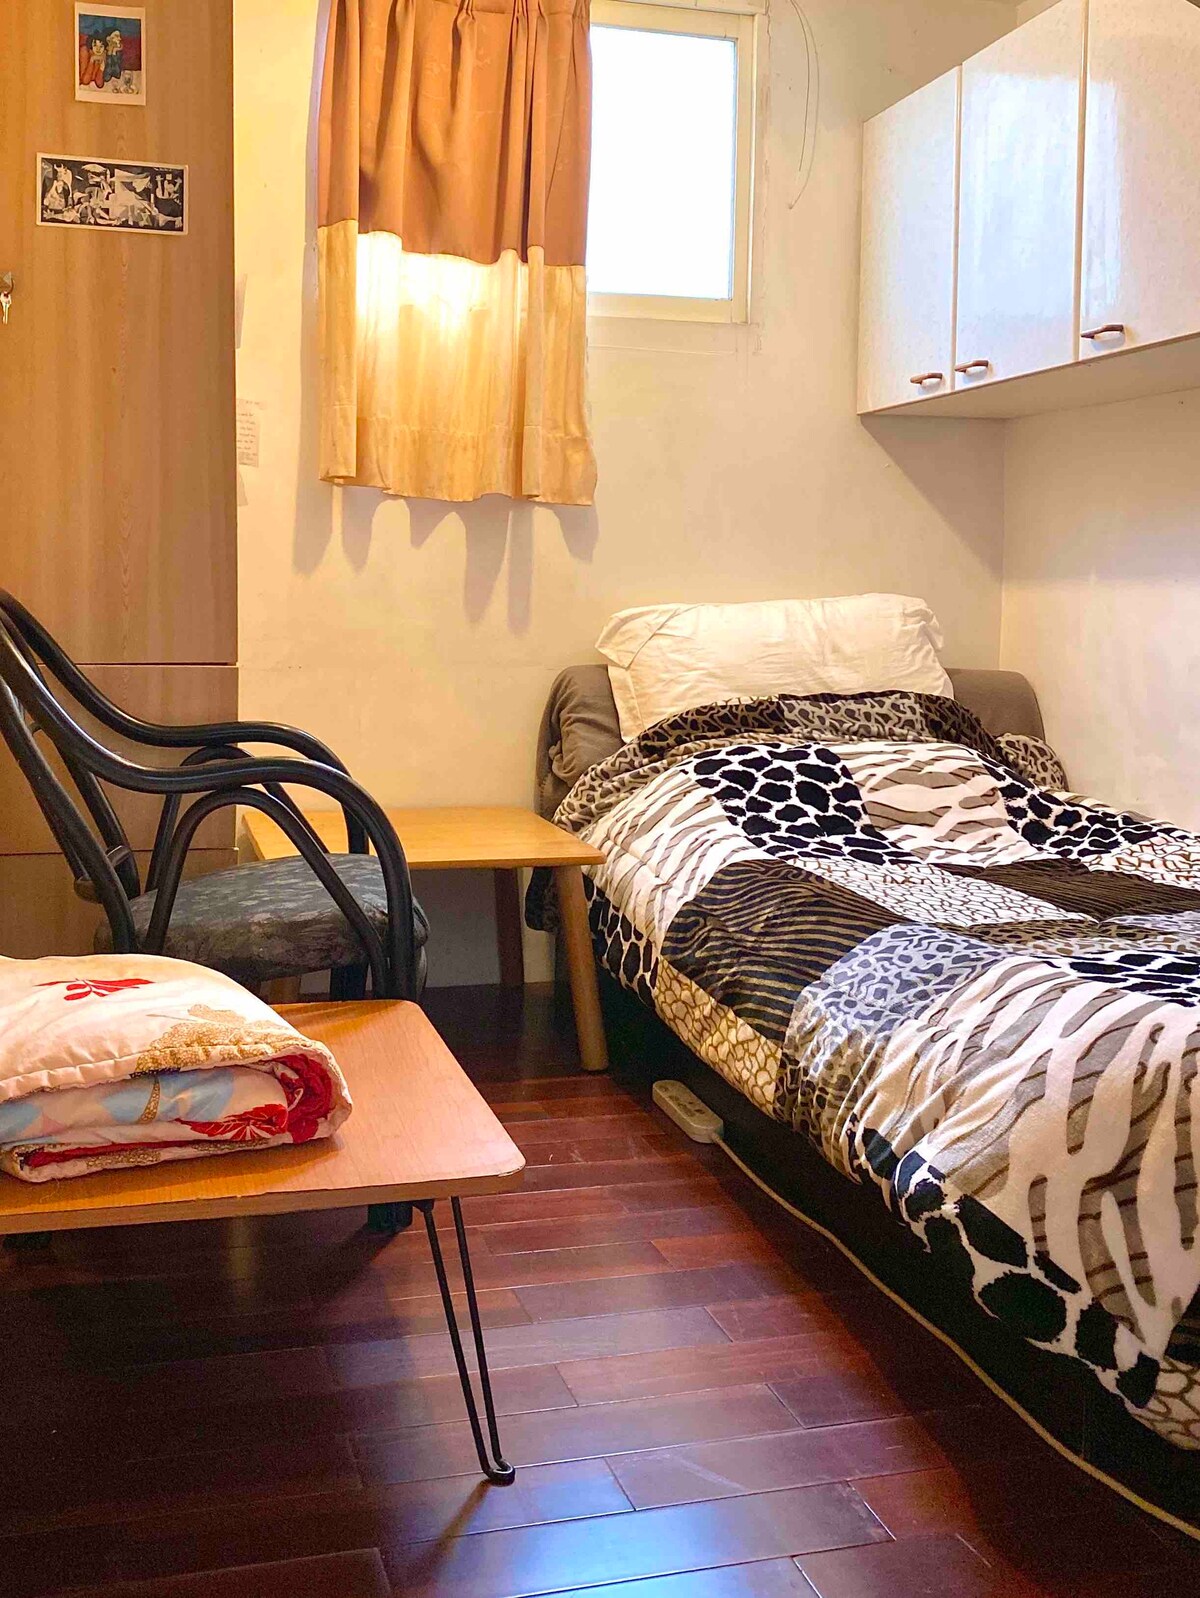 近竹北區適合出差工作或旅行中點休息的舒適簡易單人房